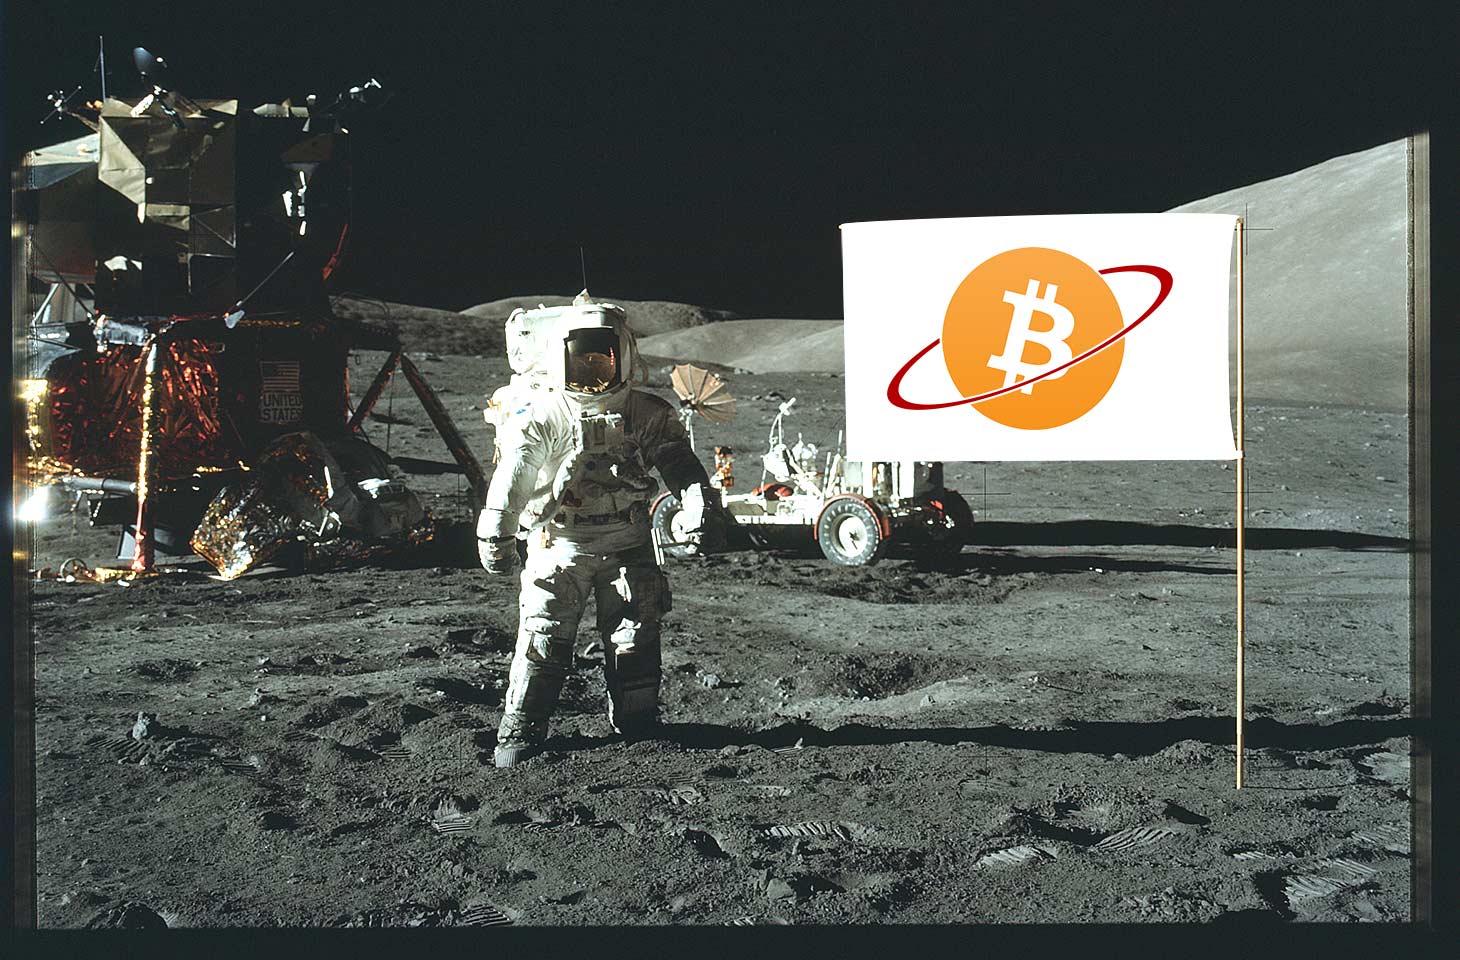 Apollo moon landing with Bitcoin flag